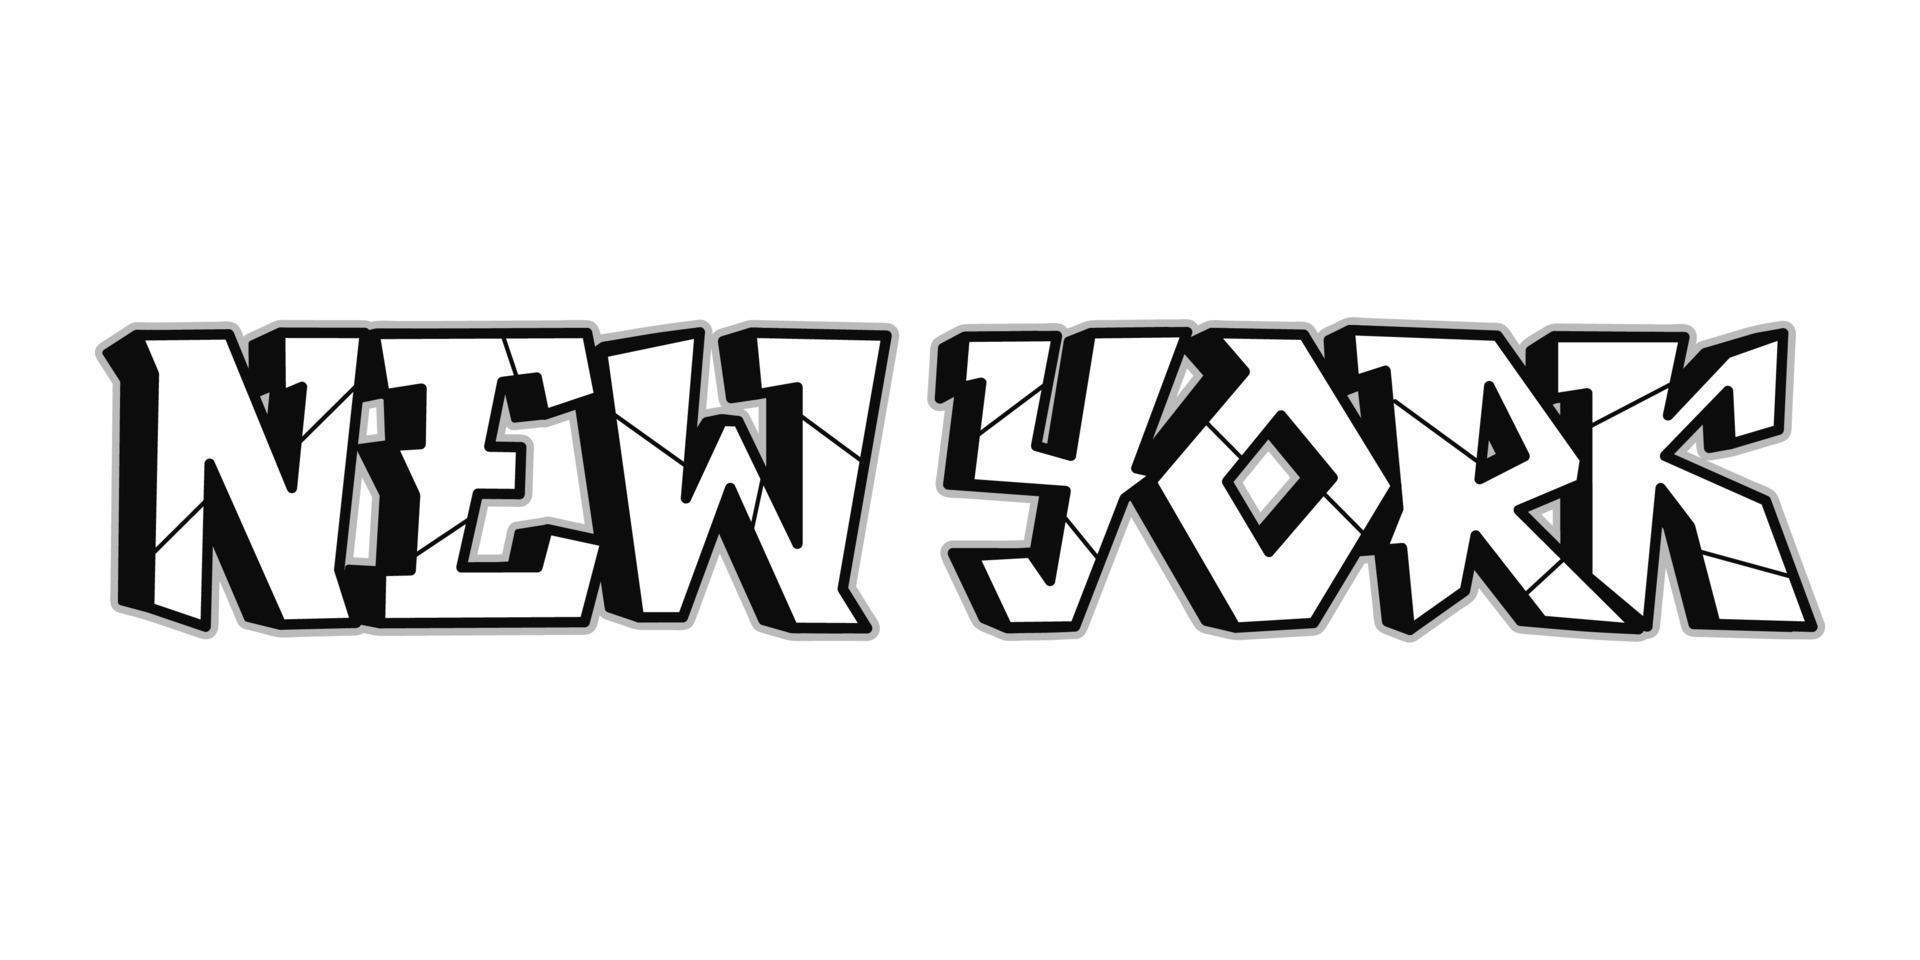 nova york palavra trippy psicodélico graffiti estilo letter.vector mão desenhada doodle logotipo dos desenhos animados ilustração de nova york. letras divertidas e divertidas, moda, impressão estilo grafite para camiseta vetor